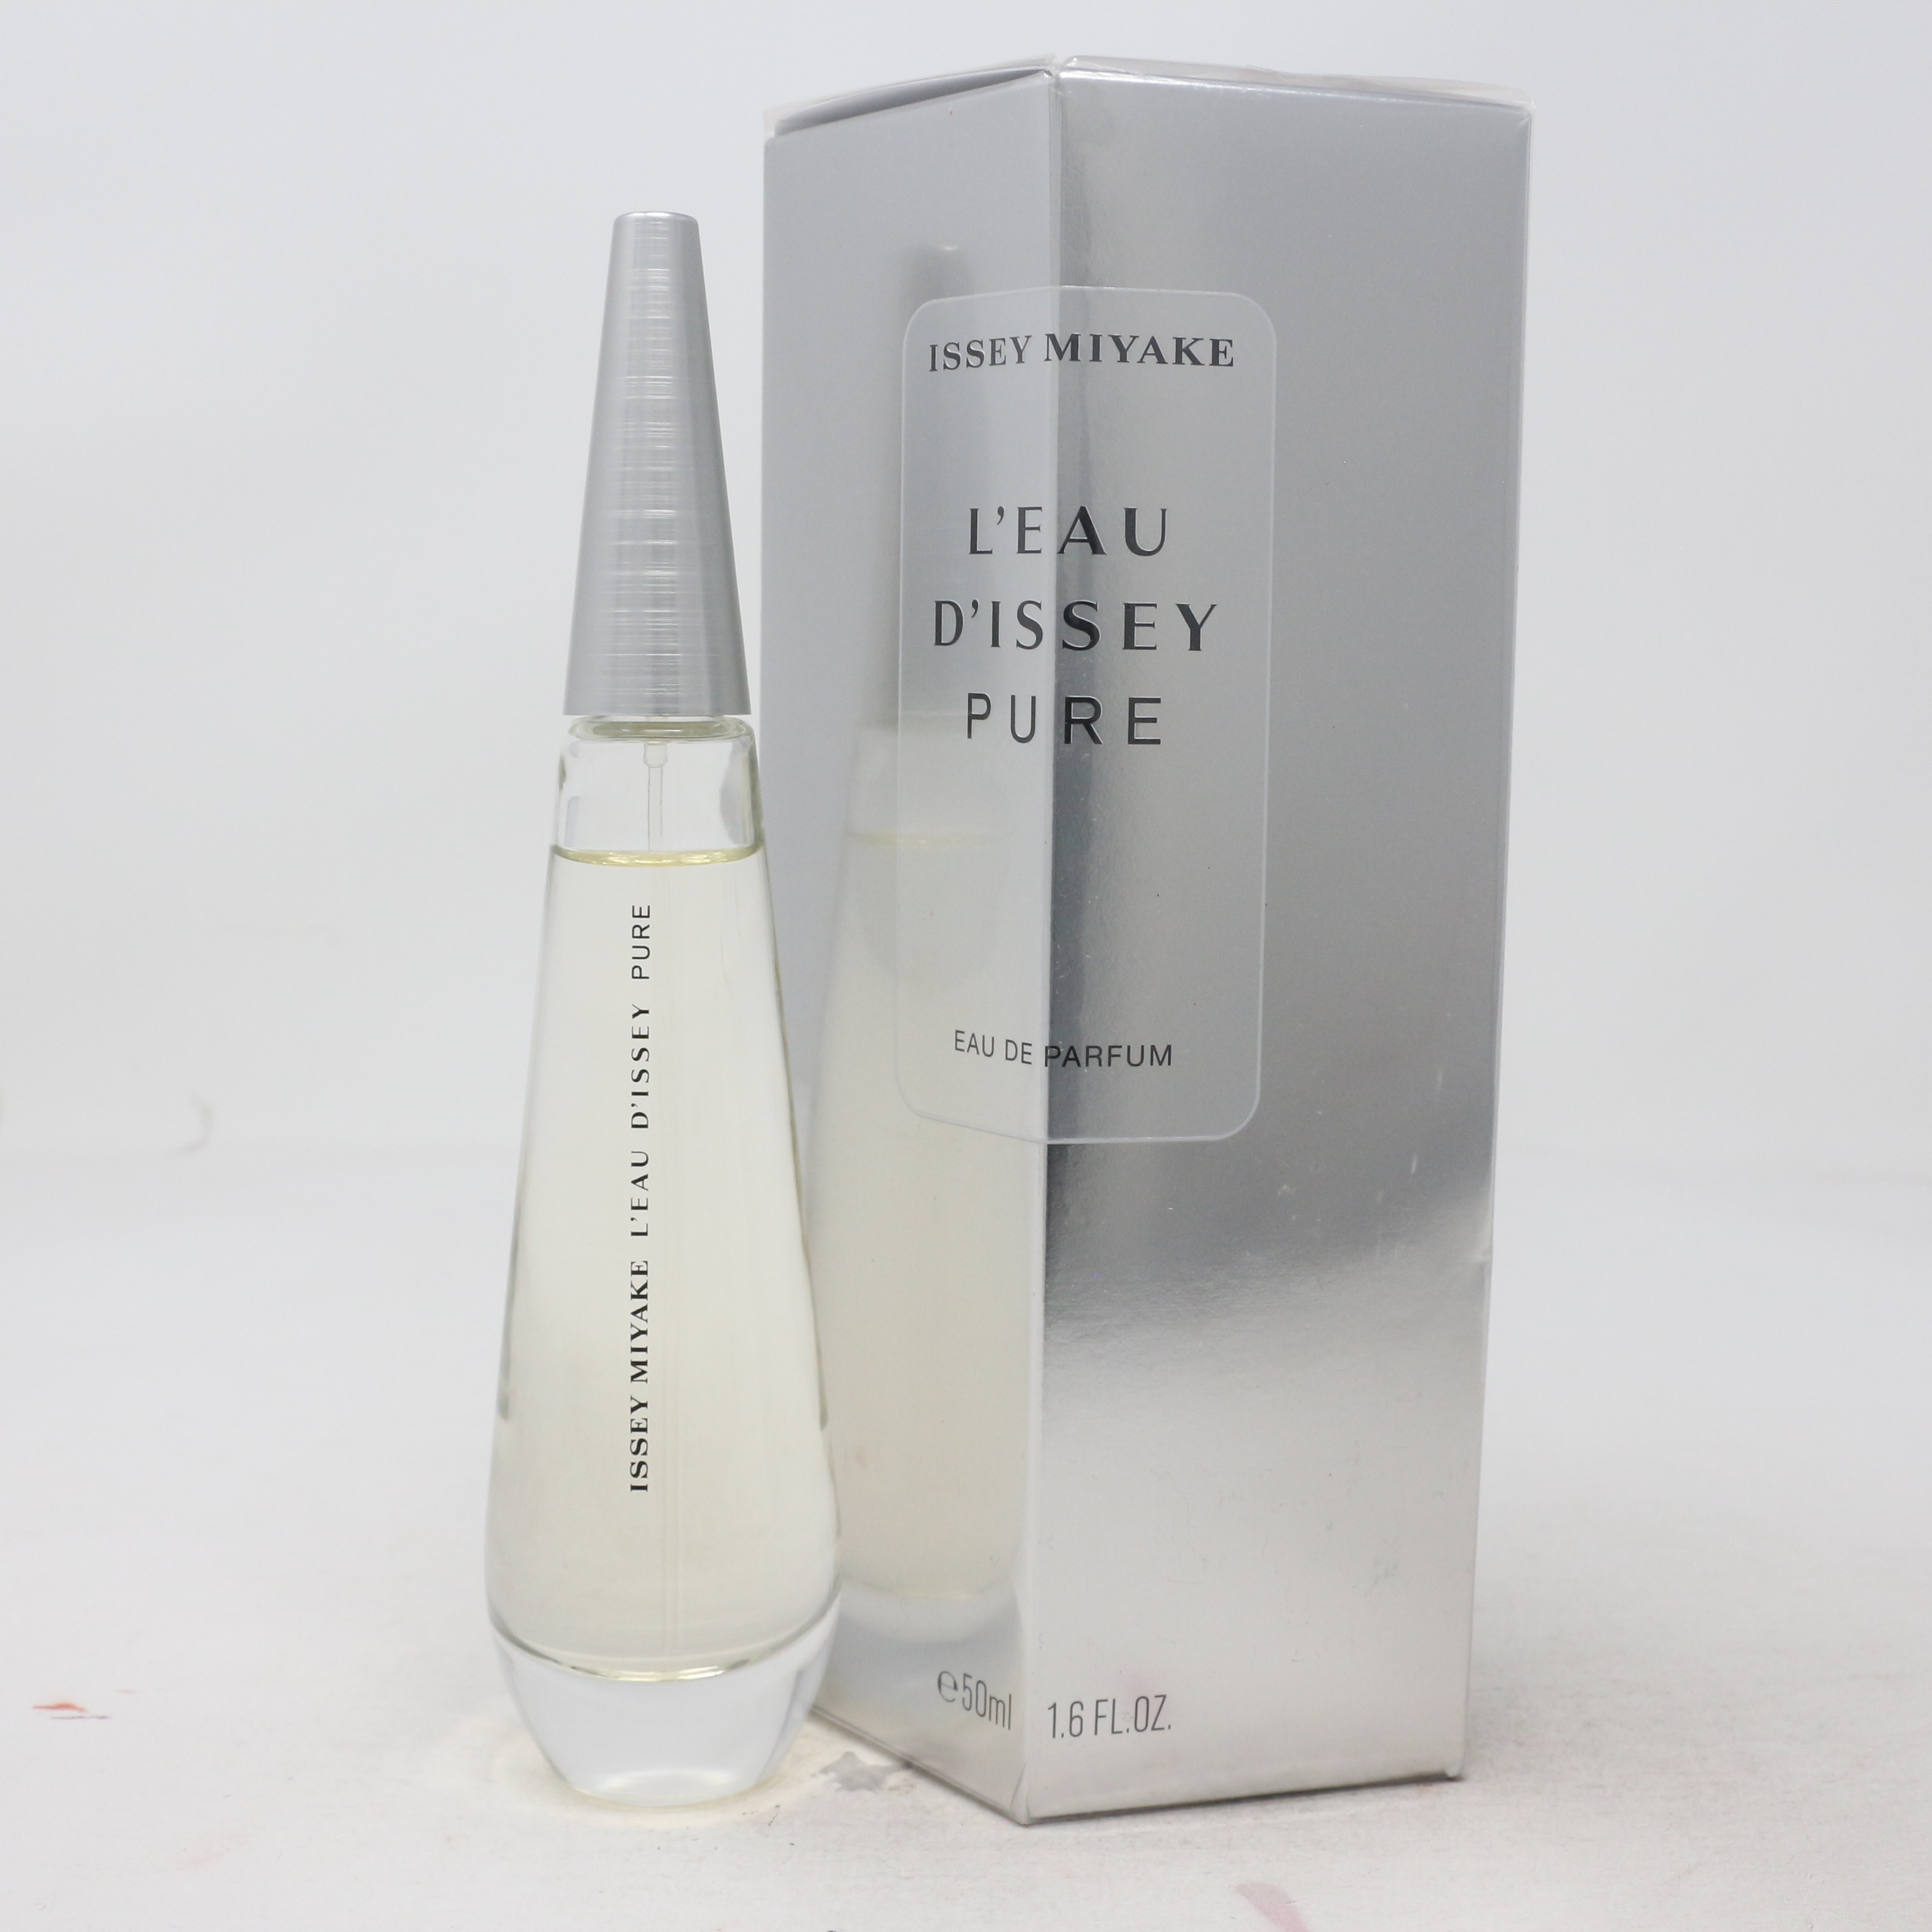 L'eau D'issey Pure by Issey Miyake Eau De Parfum 1.6oz/50ml Spray New ...